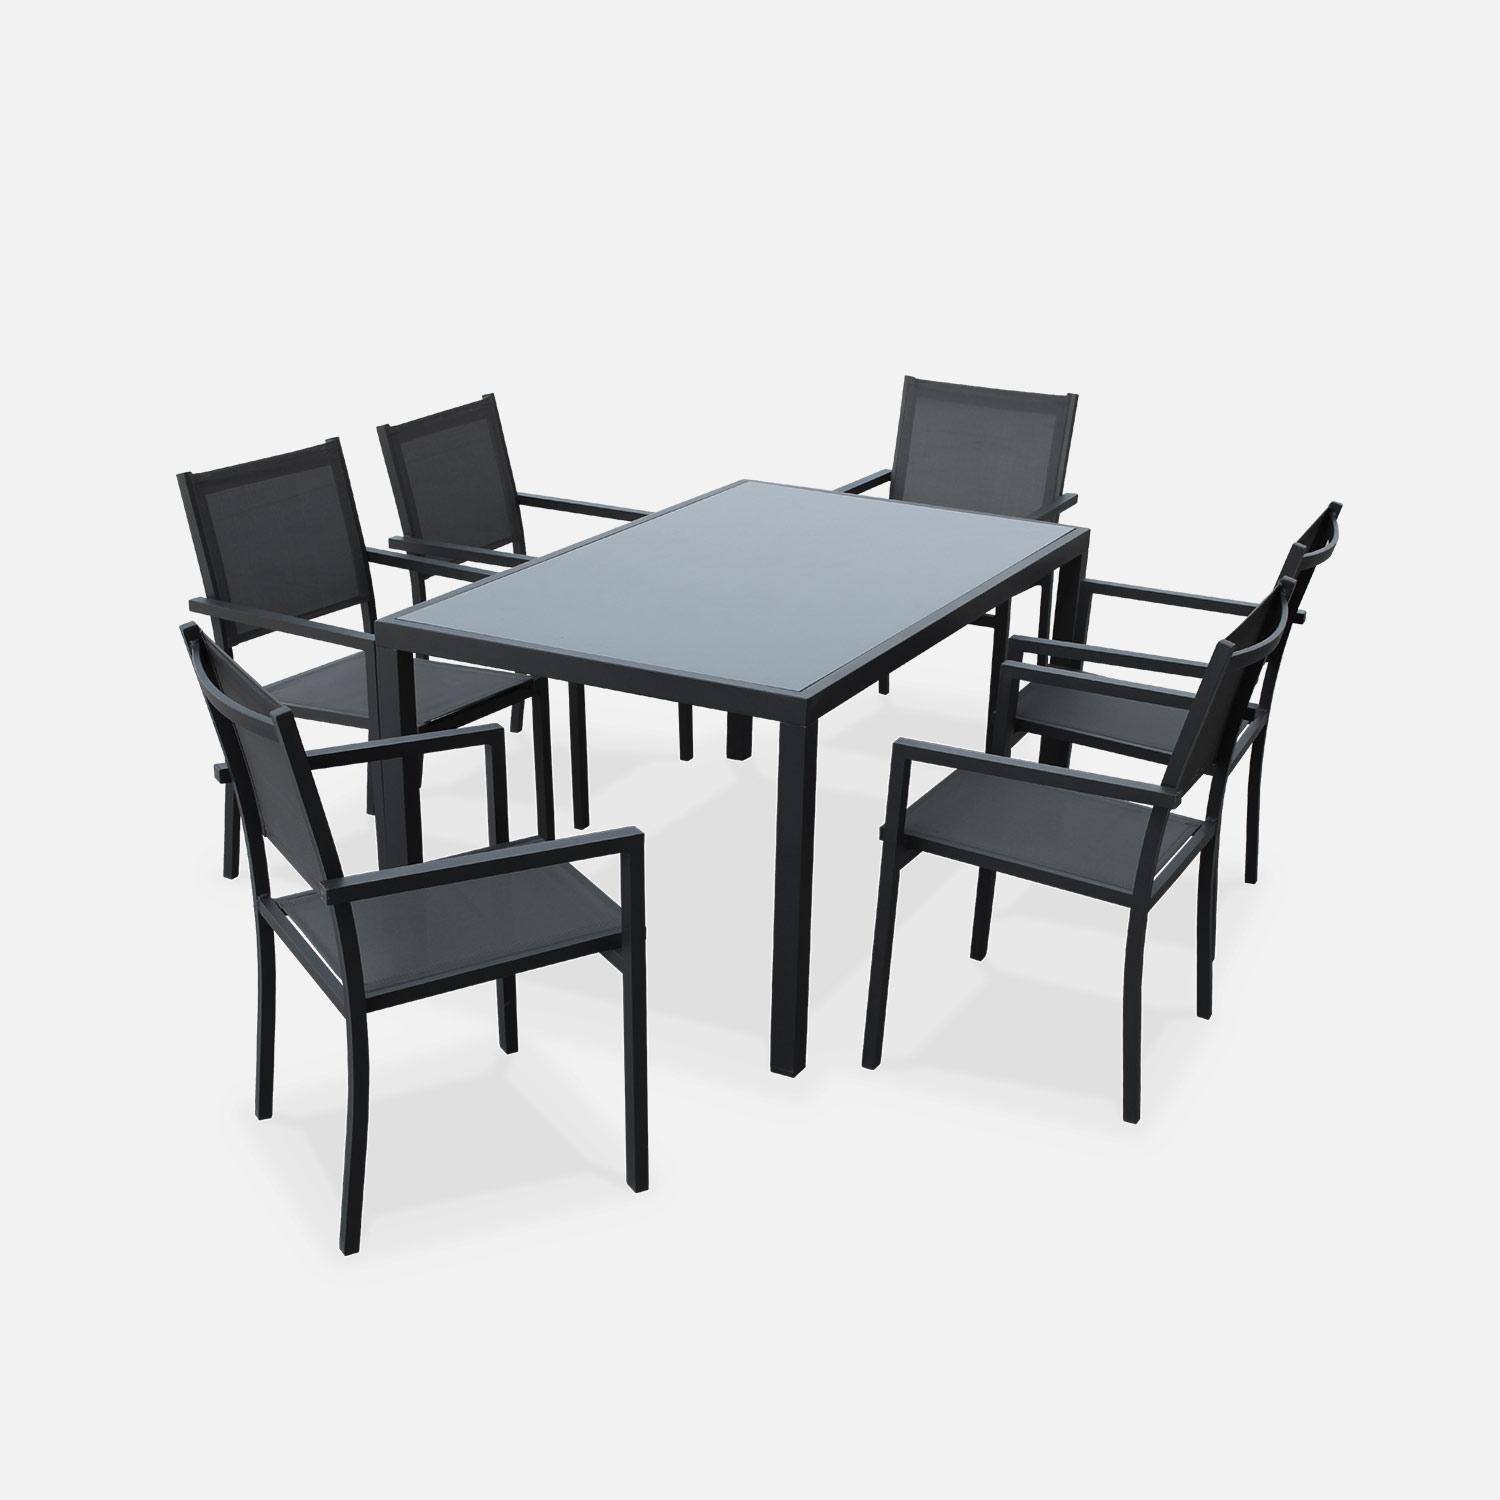 Salon de jardin en aluminium et textilène - Capua - Anthracite, gris - 6 places - 1 grande table rectangulaire, 6 fauteuils empilables Photo2